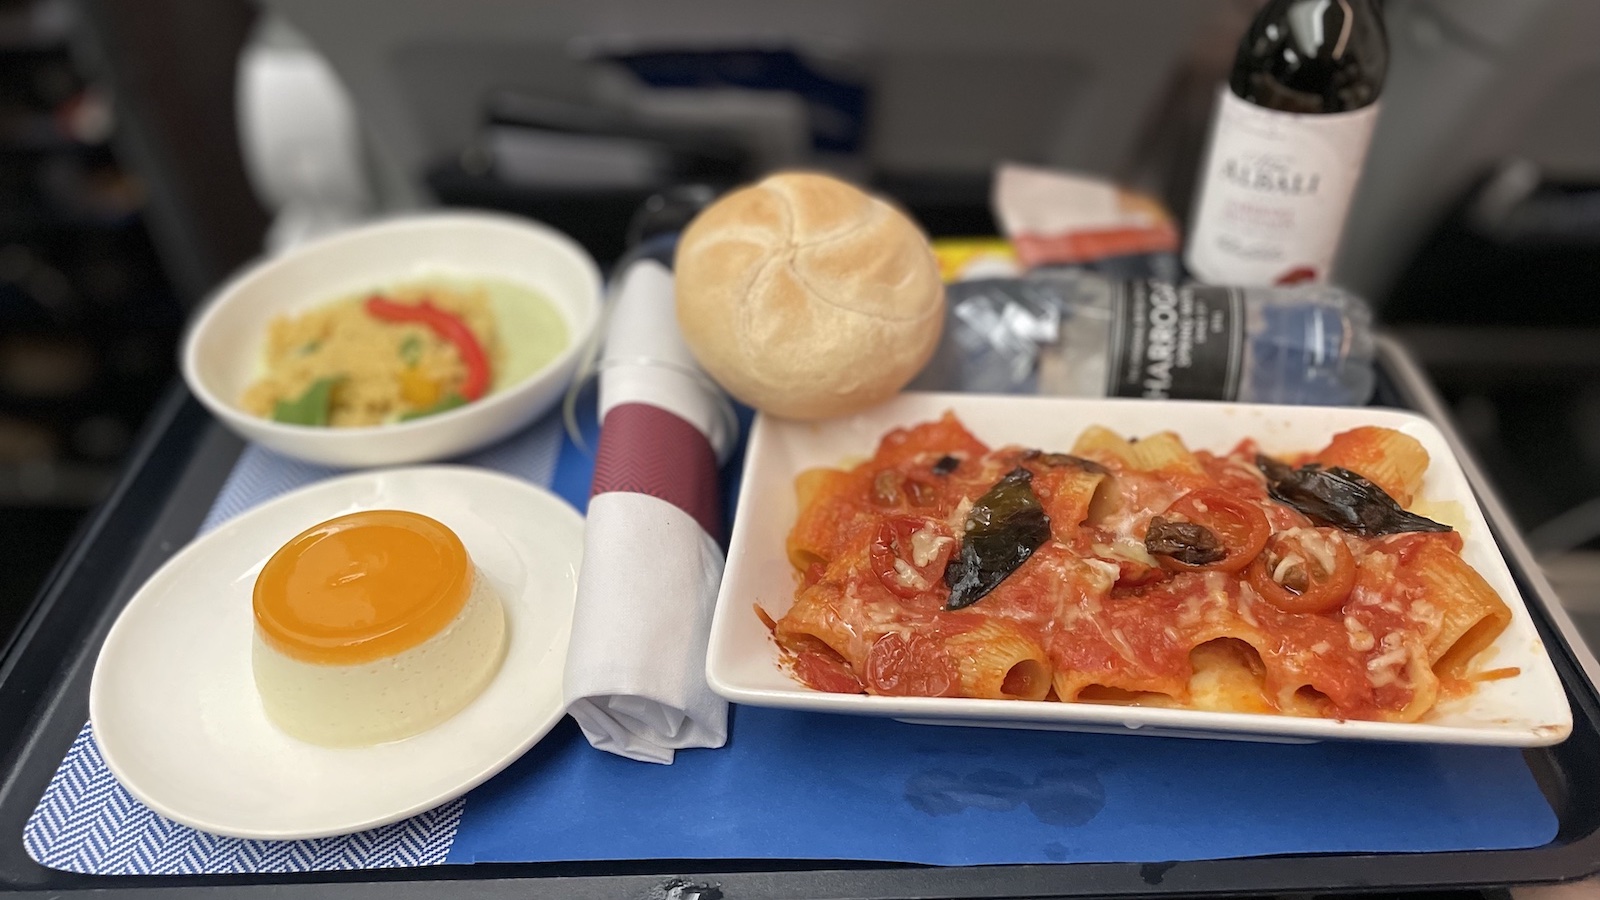 British Airways Premium Economy Dinner Rigatoni Pasta